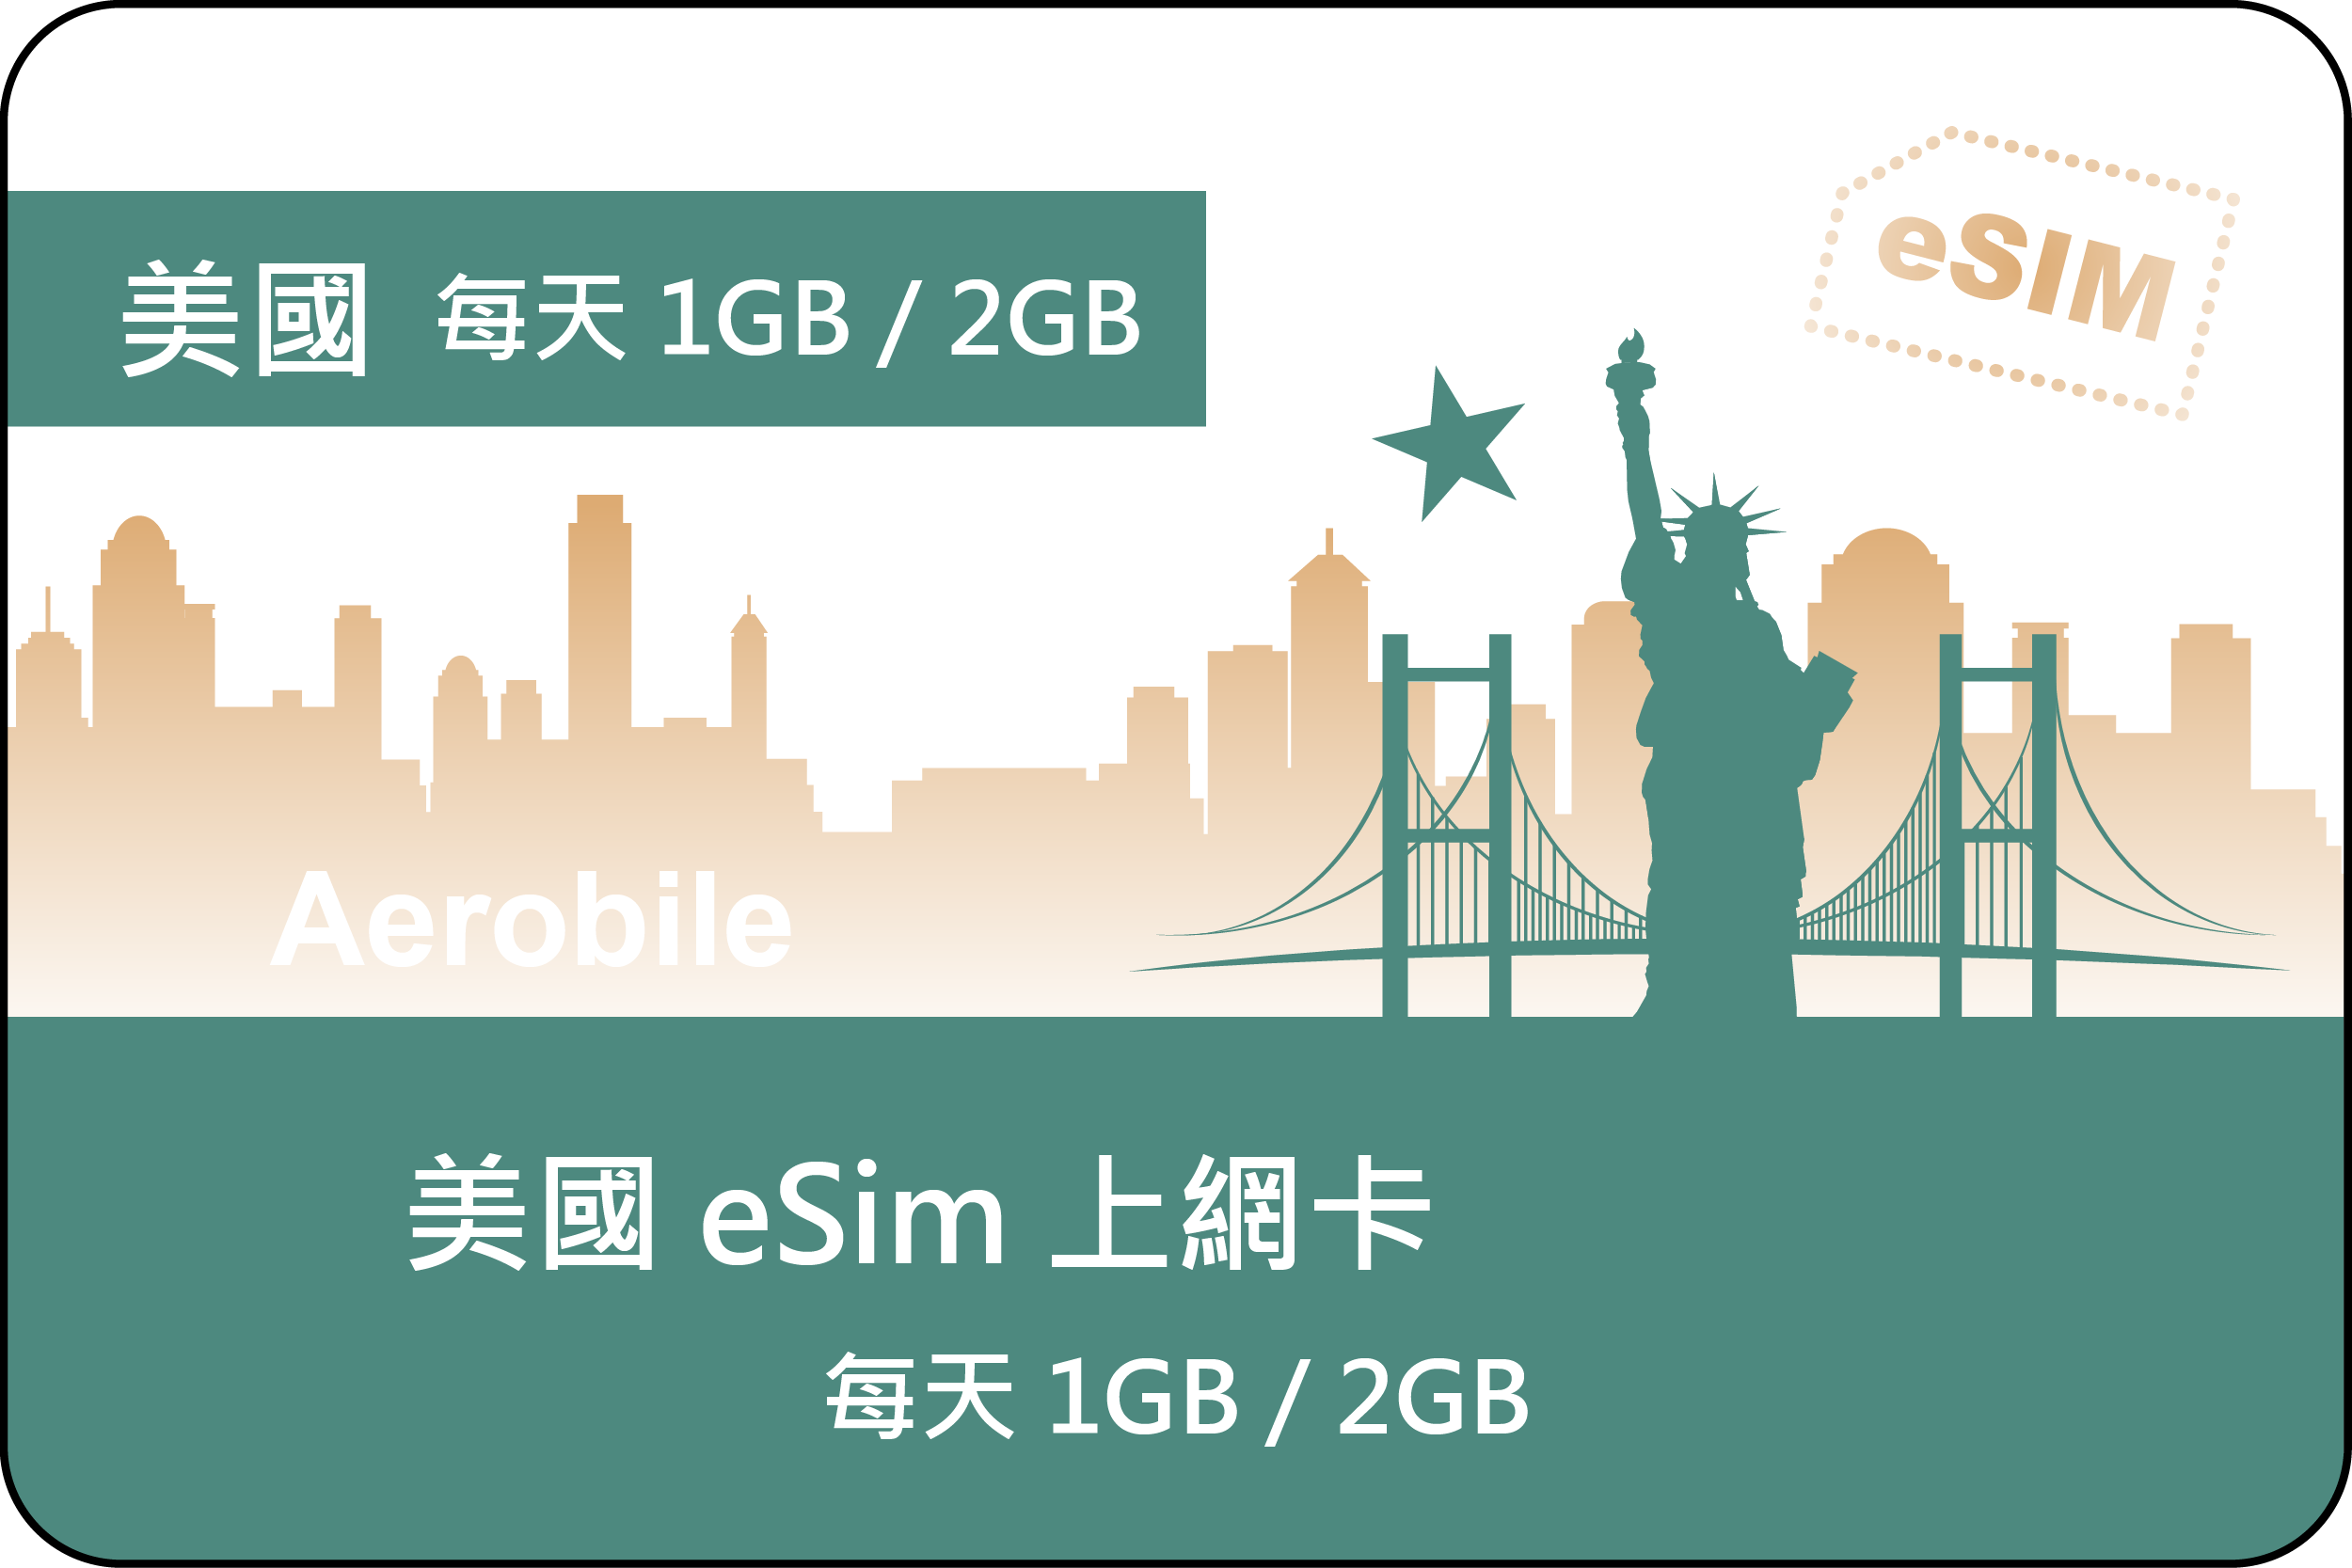 eSIM US and Canada digital SIM card for 30 days